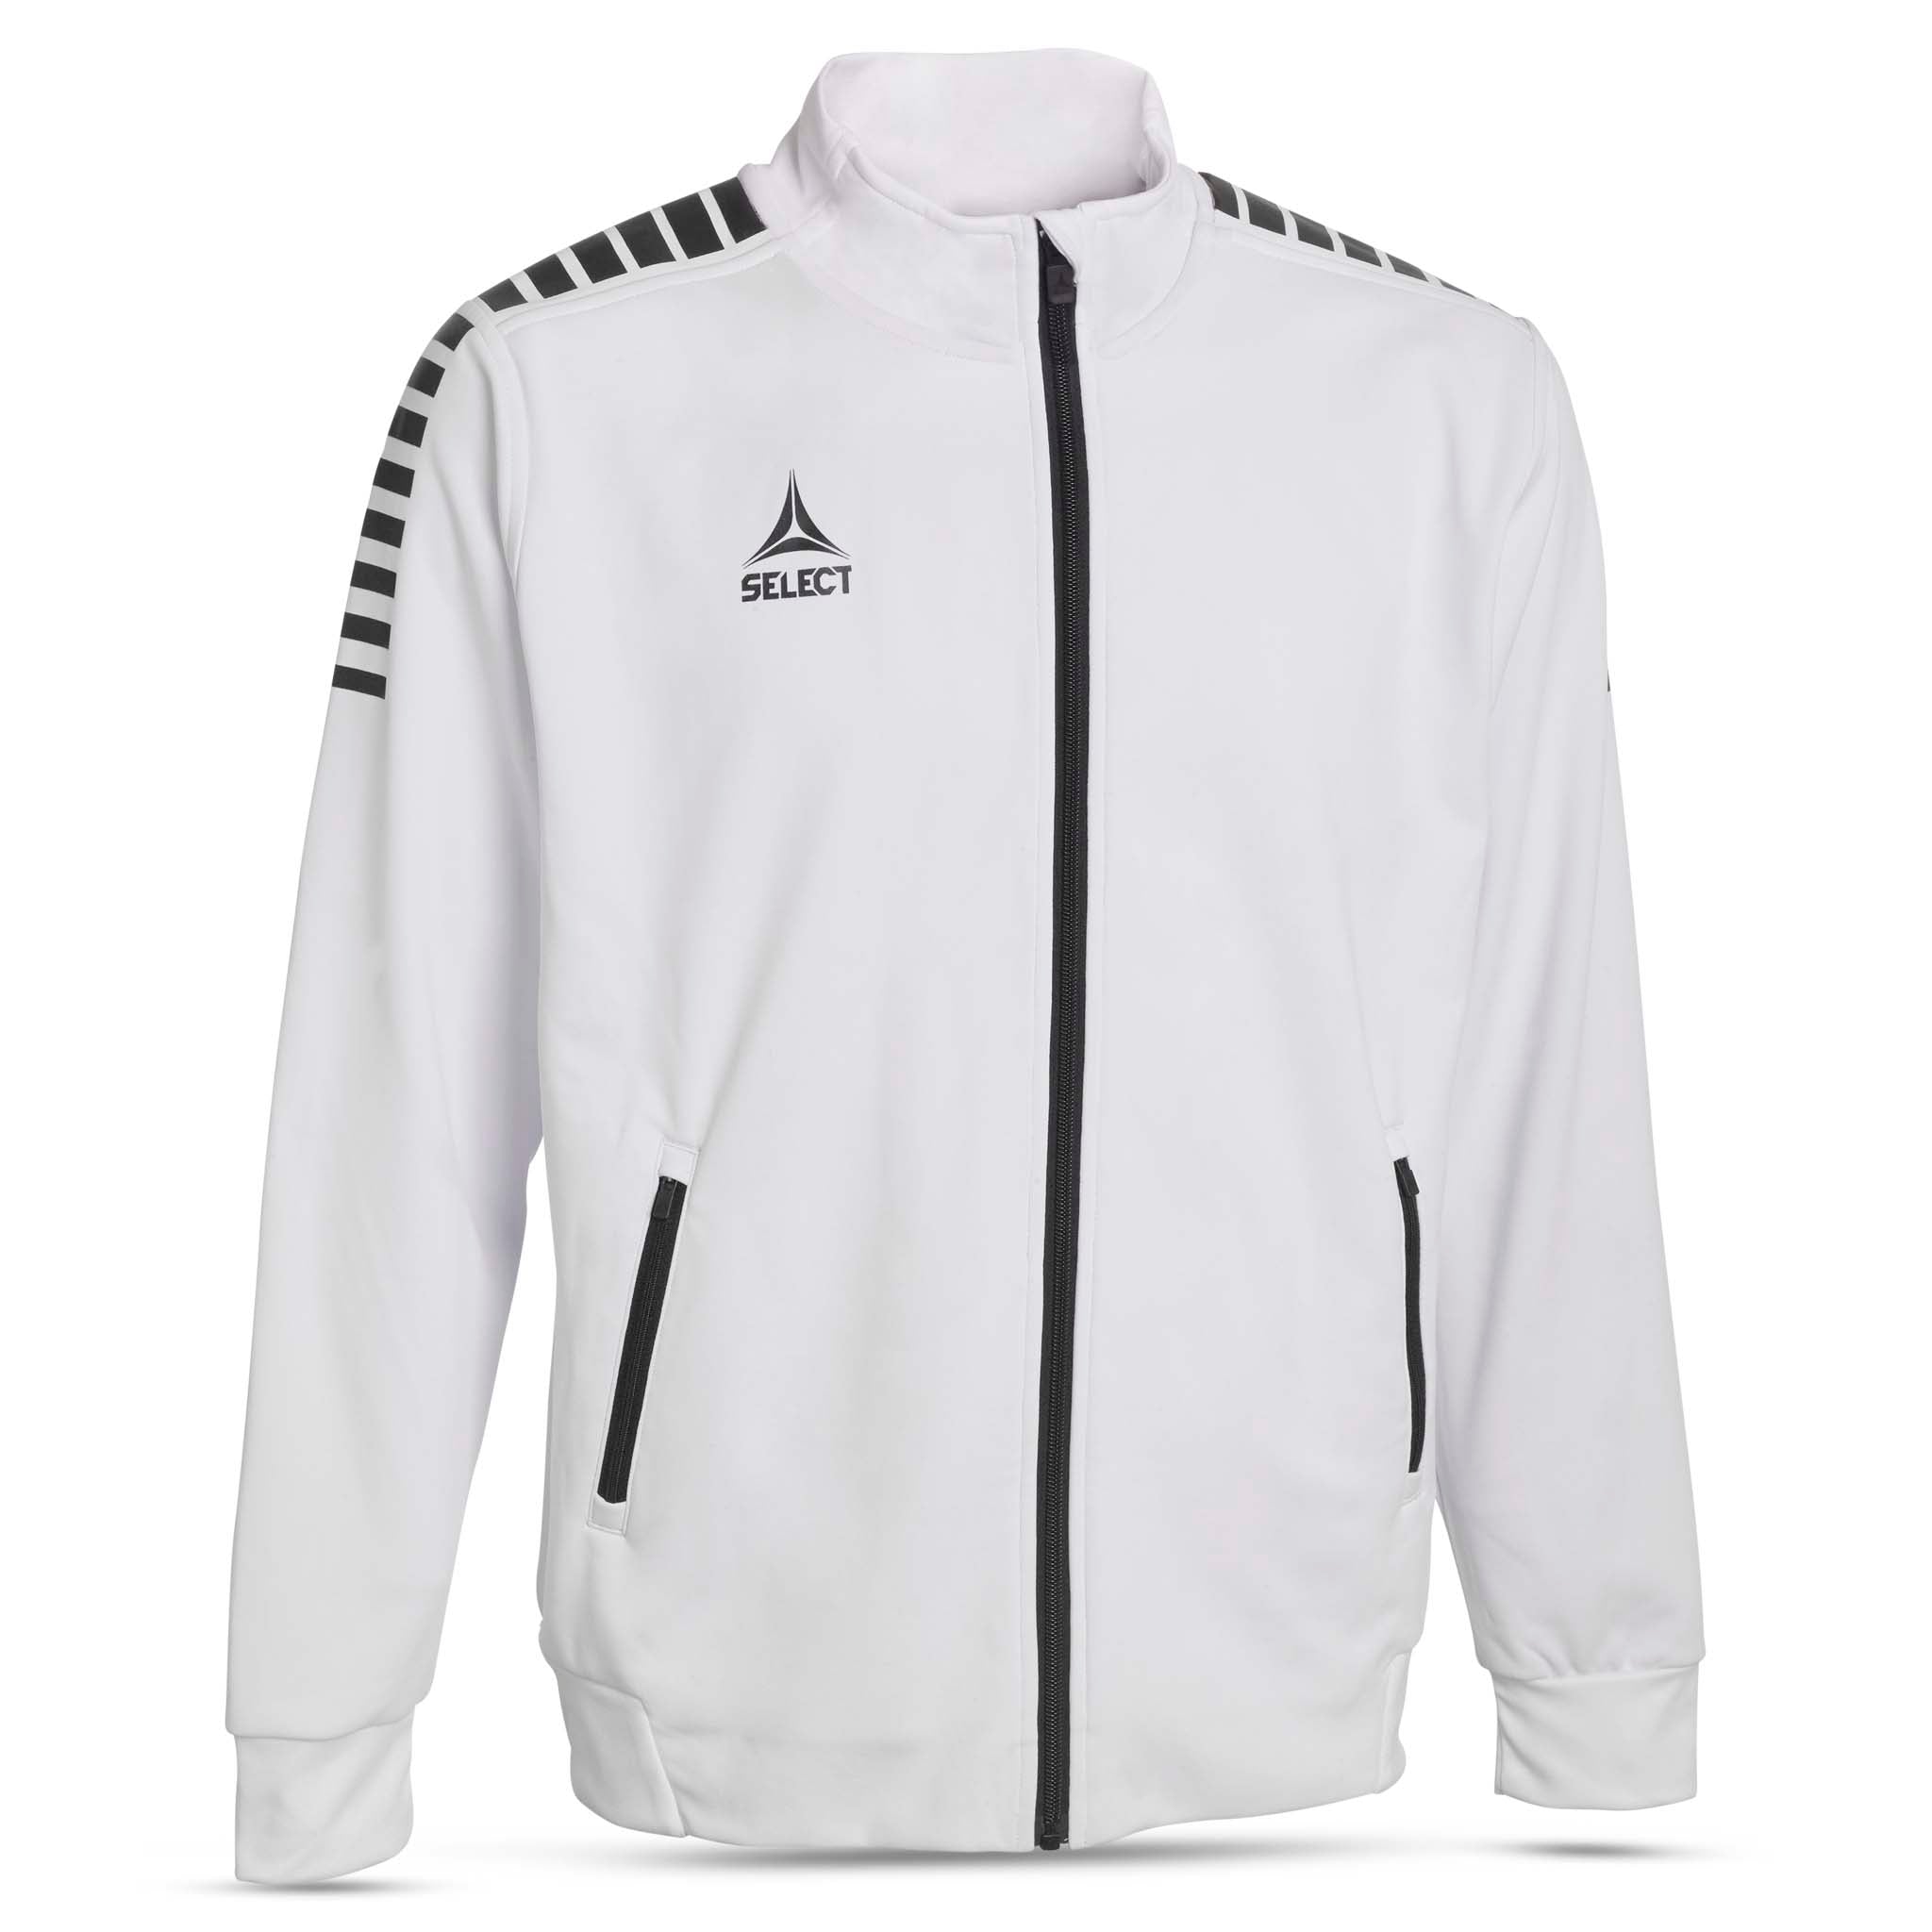 Zip jacket  - Monaco, youth #colour_navy/white